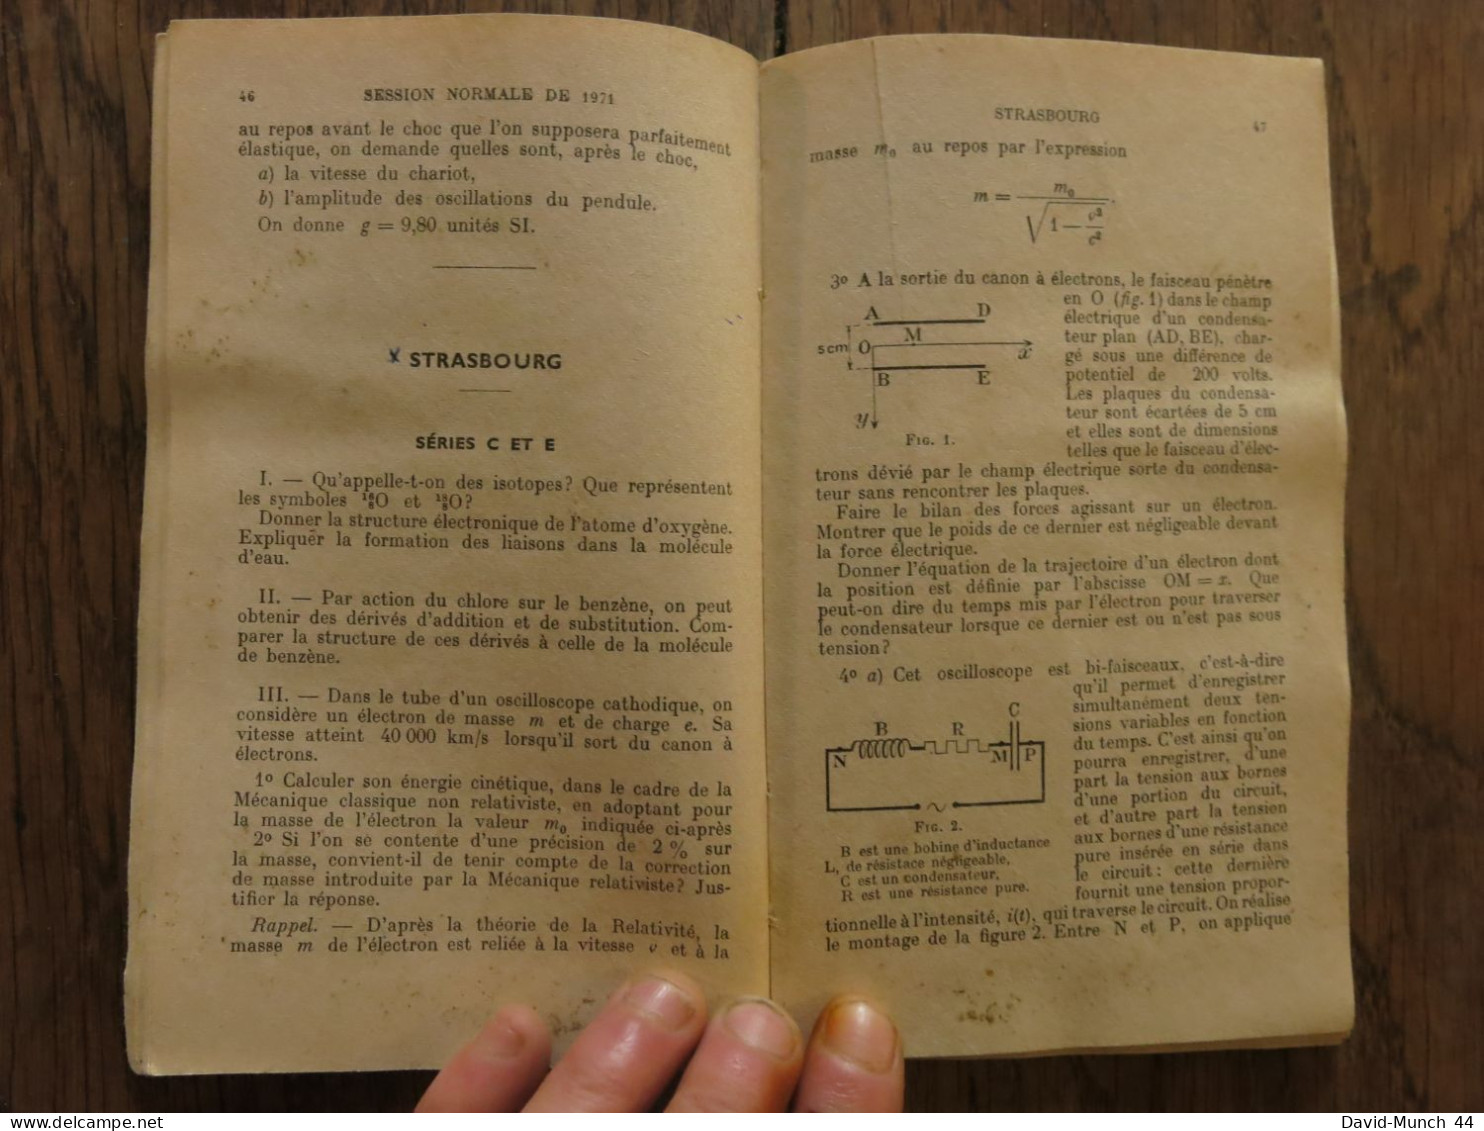 Bulletin de l'union des physiciens, supplément du numéro 540. Décembre 1971